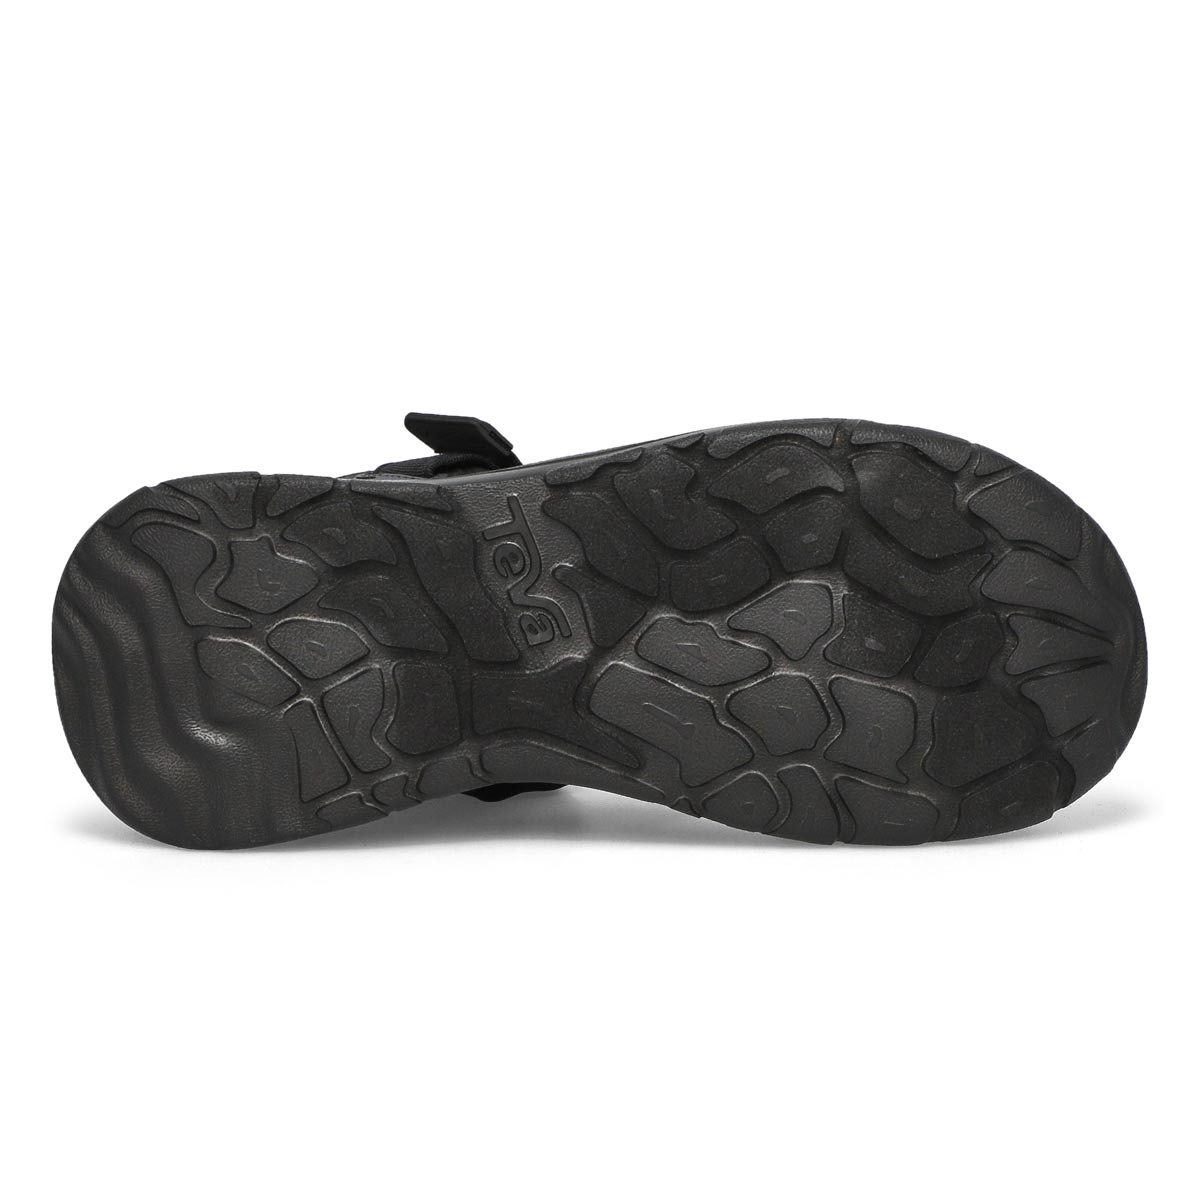 Men's Zymic Sport Sandal - Black